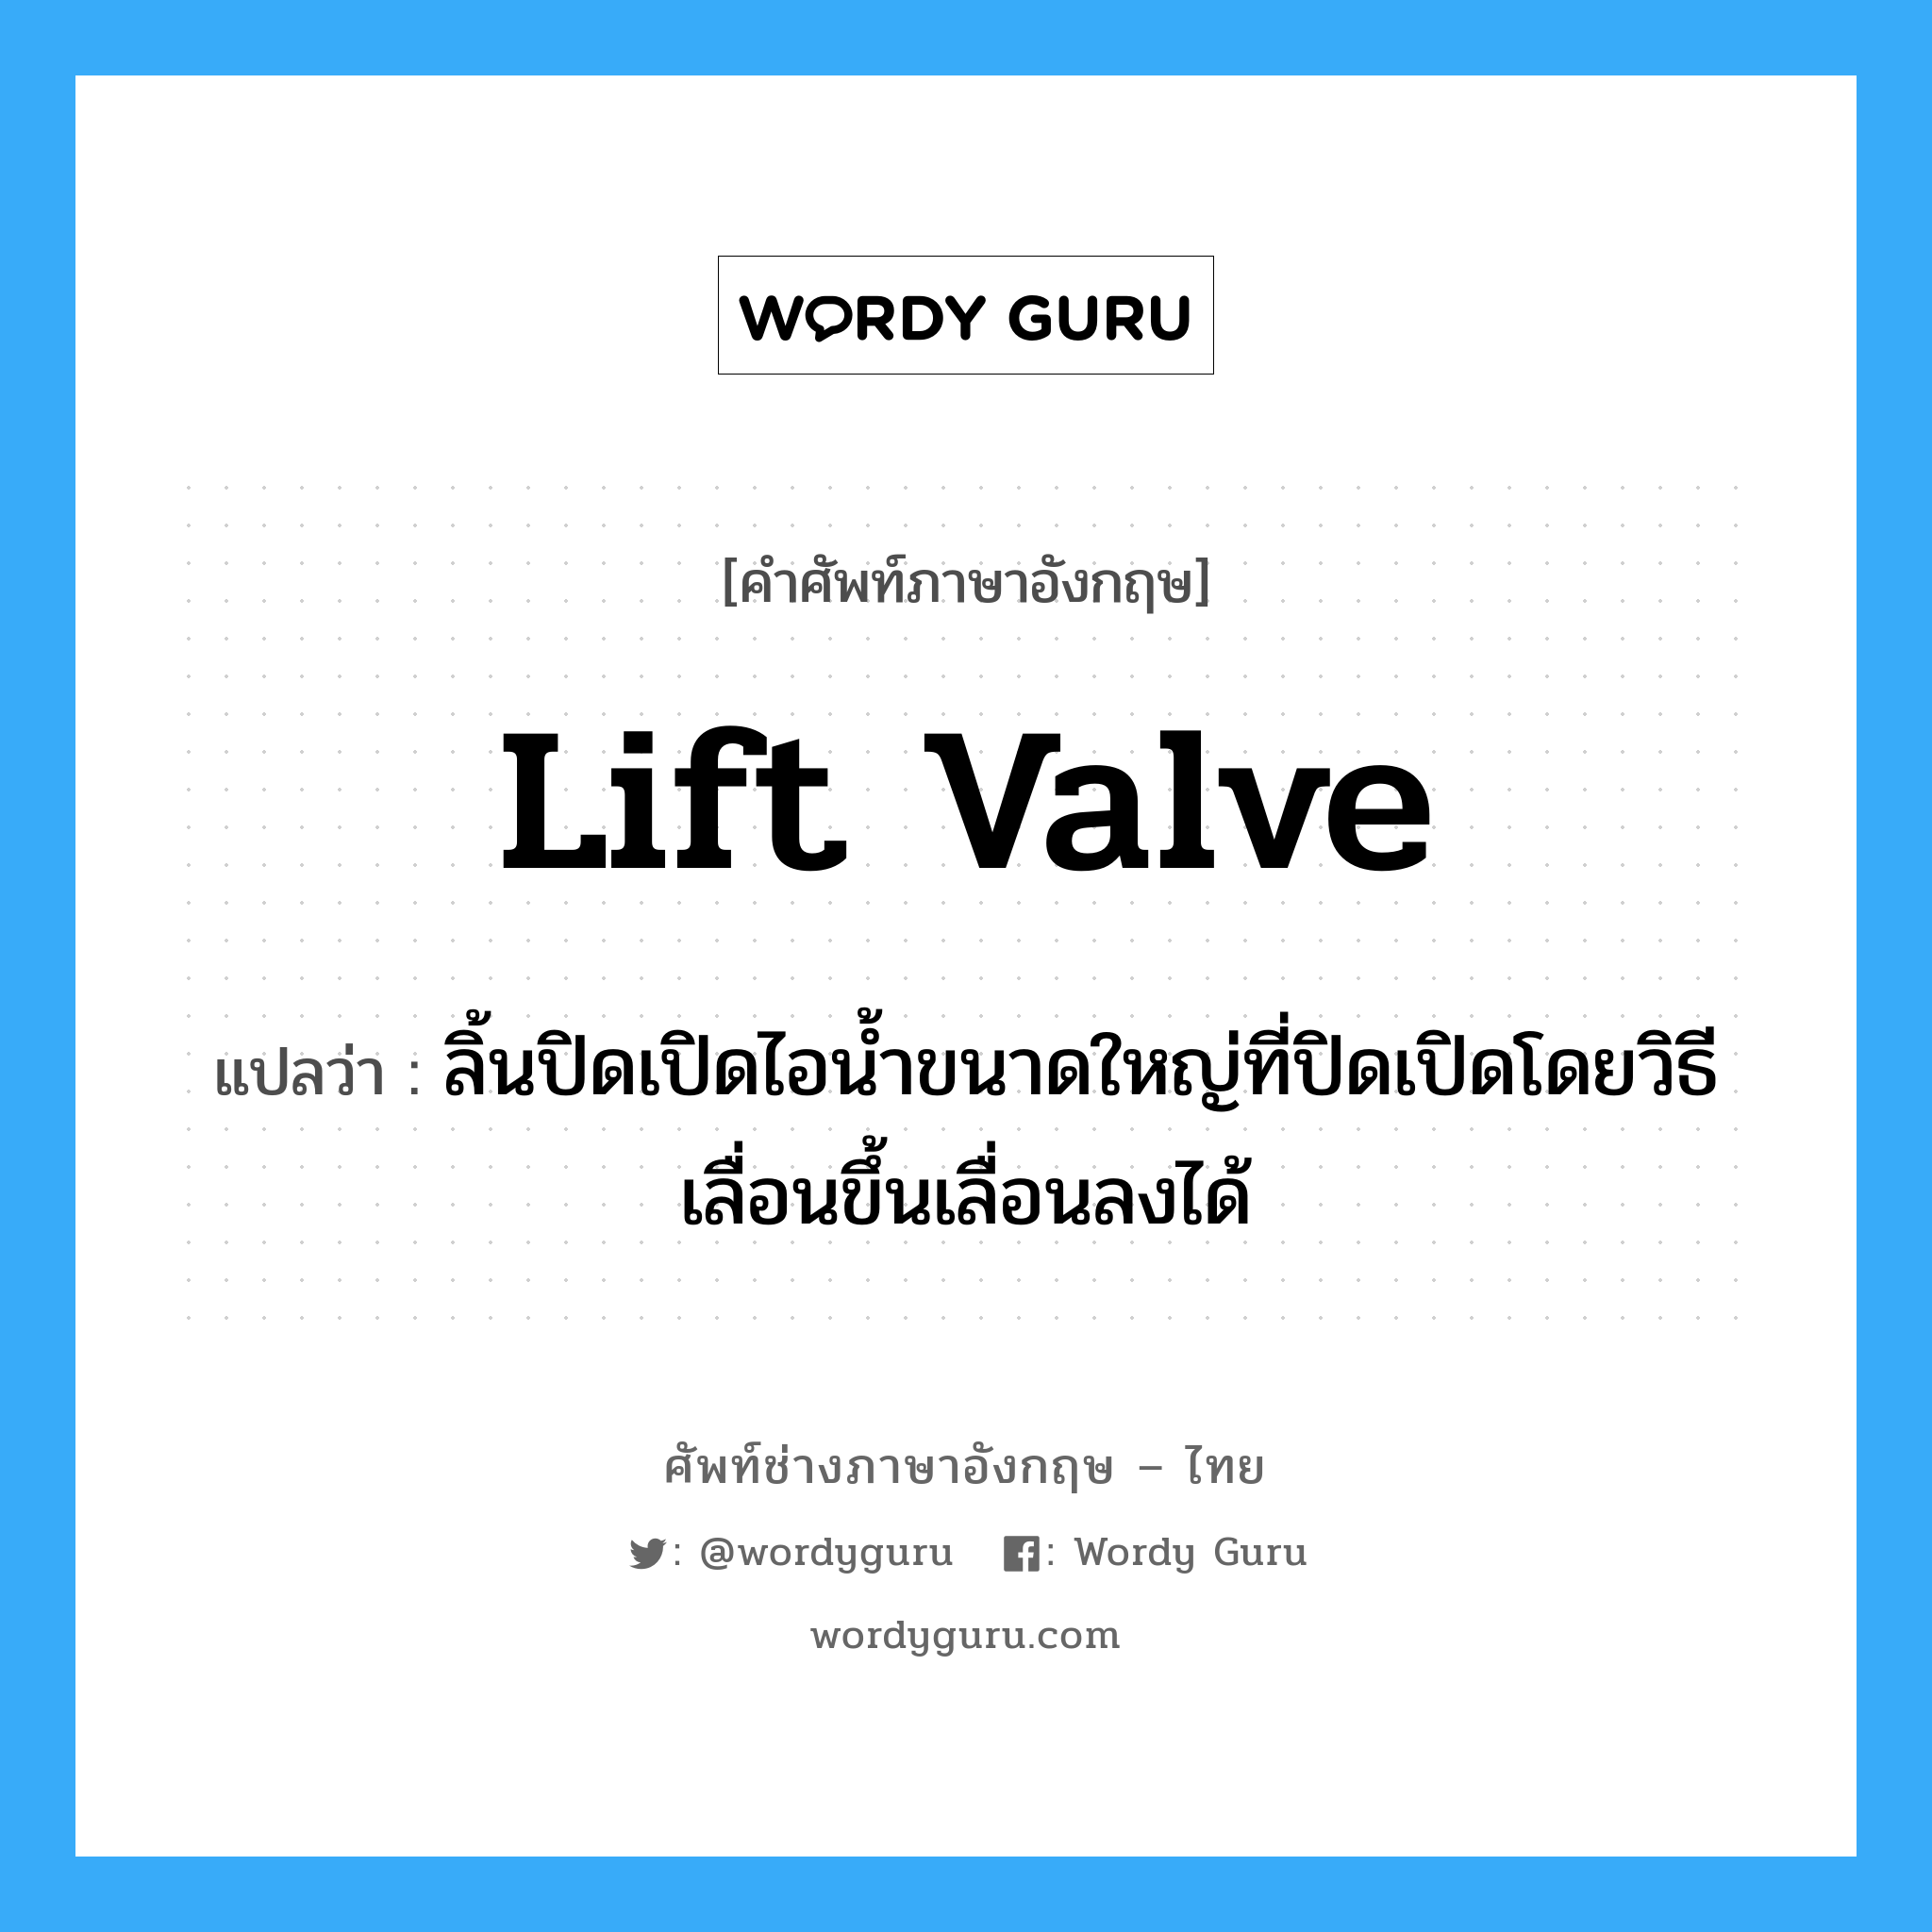 lift valve แปลว่า?, คำศัพท์ช่างภาษาอังกฤษ - ไทย lift valve คำศัพท์ภาษาอังกฤษ lift valve แปลว่า ลิ้นปิดเปิดไอน้ำขนาดใหญ่ที่ปิดเปิดโดยวิธีเลื่อนขึ้นเลื่อนลงได้